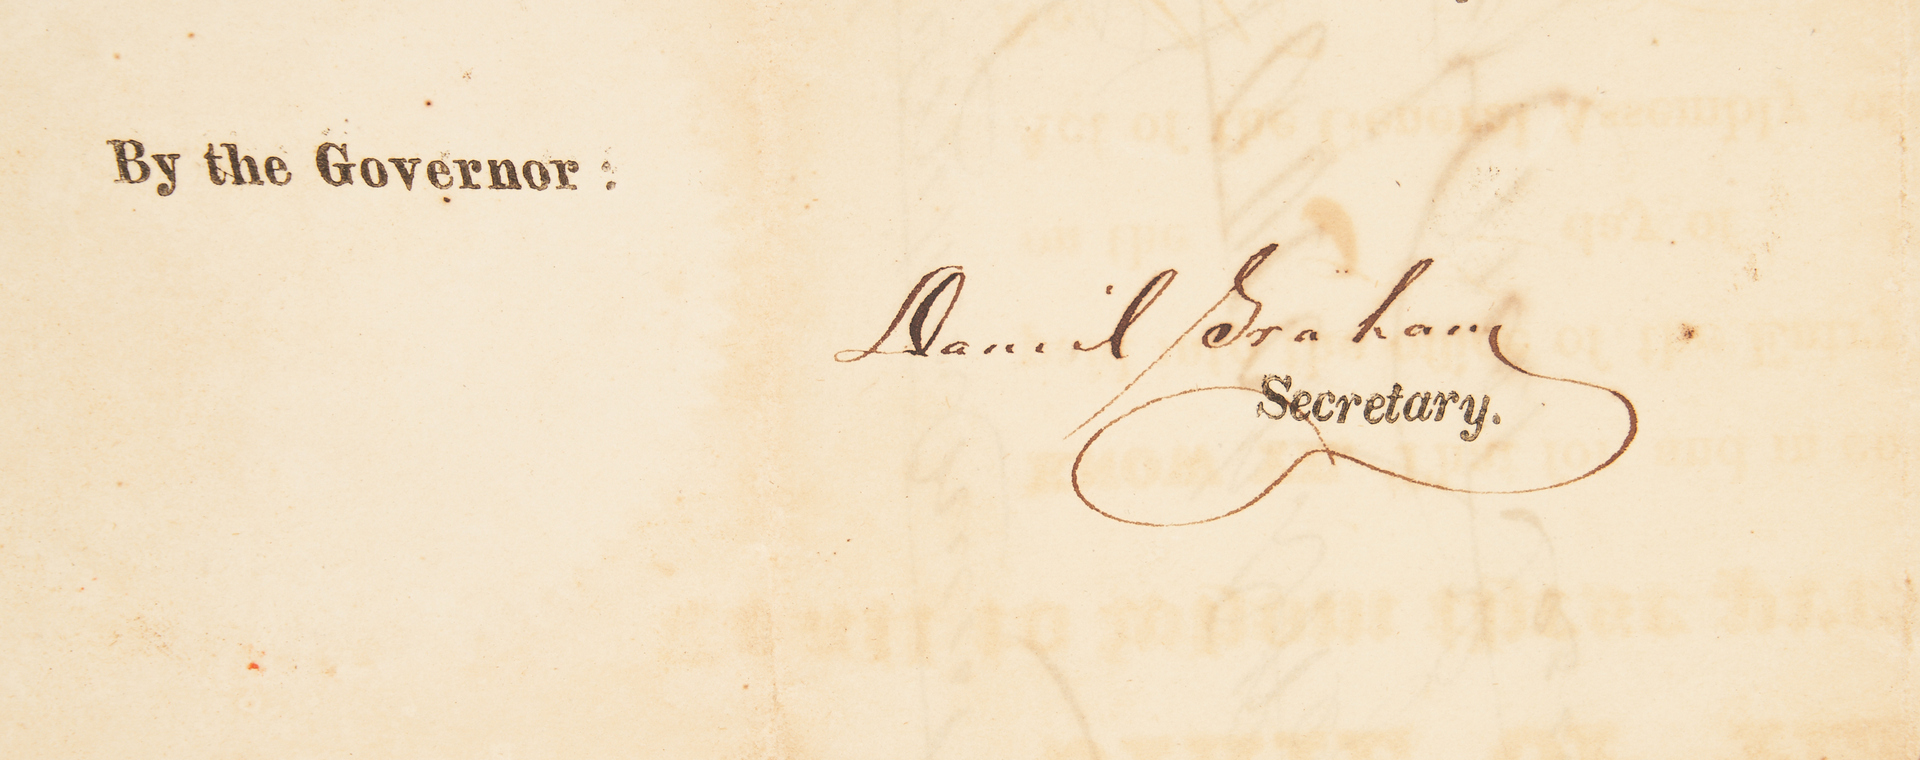 Lot 743: Large Davis Family & Devon Farm Archive, incl. James K. Polk Signed